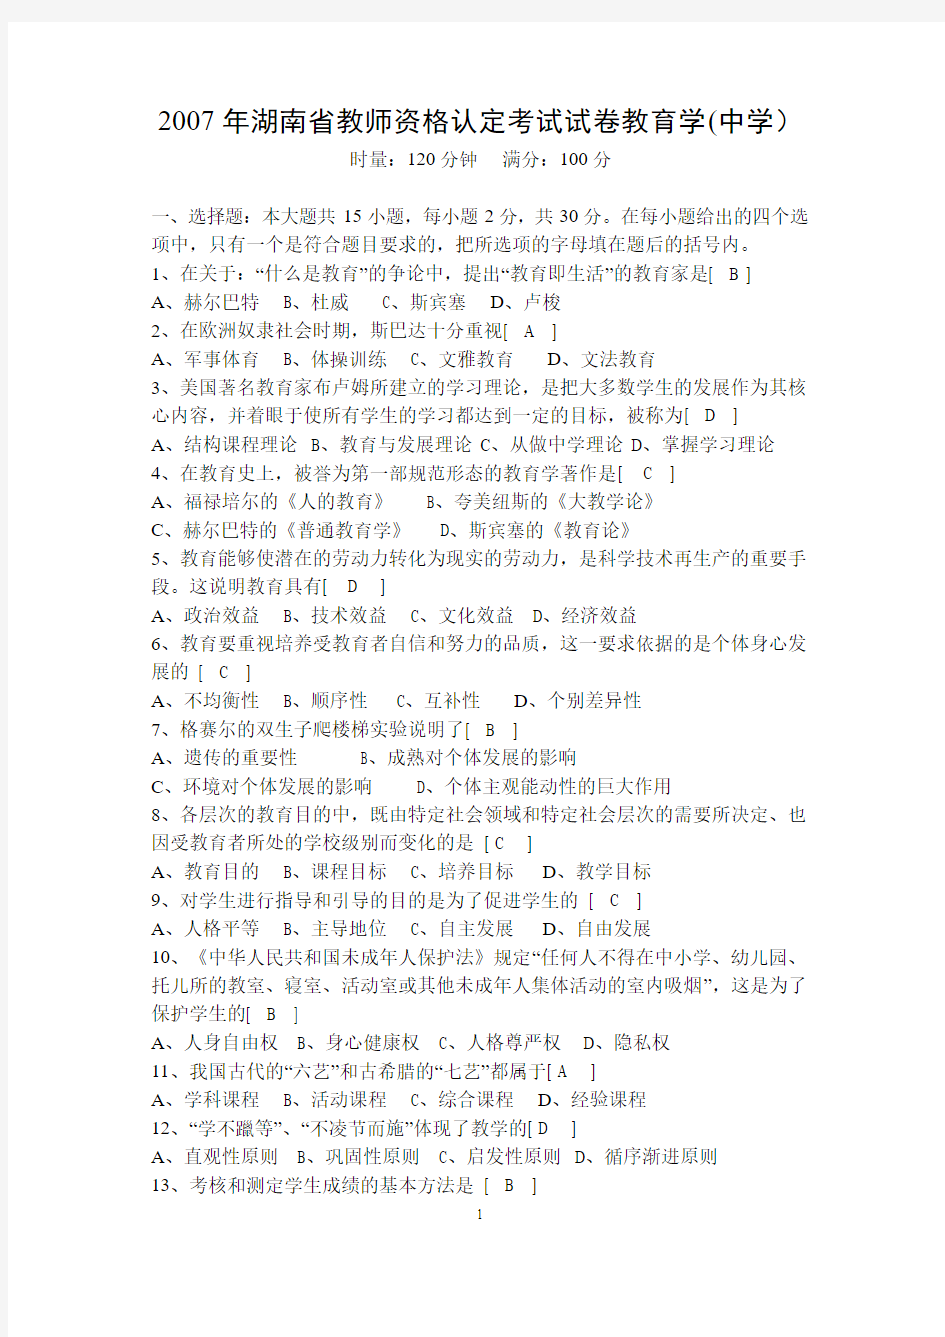 2007-2009年湖南省教师资格认定考试试卷教育学(中学)